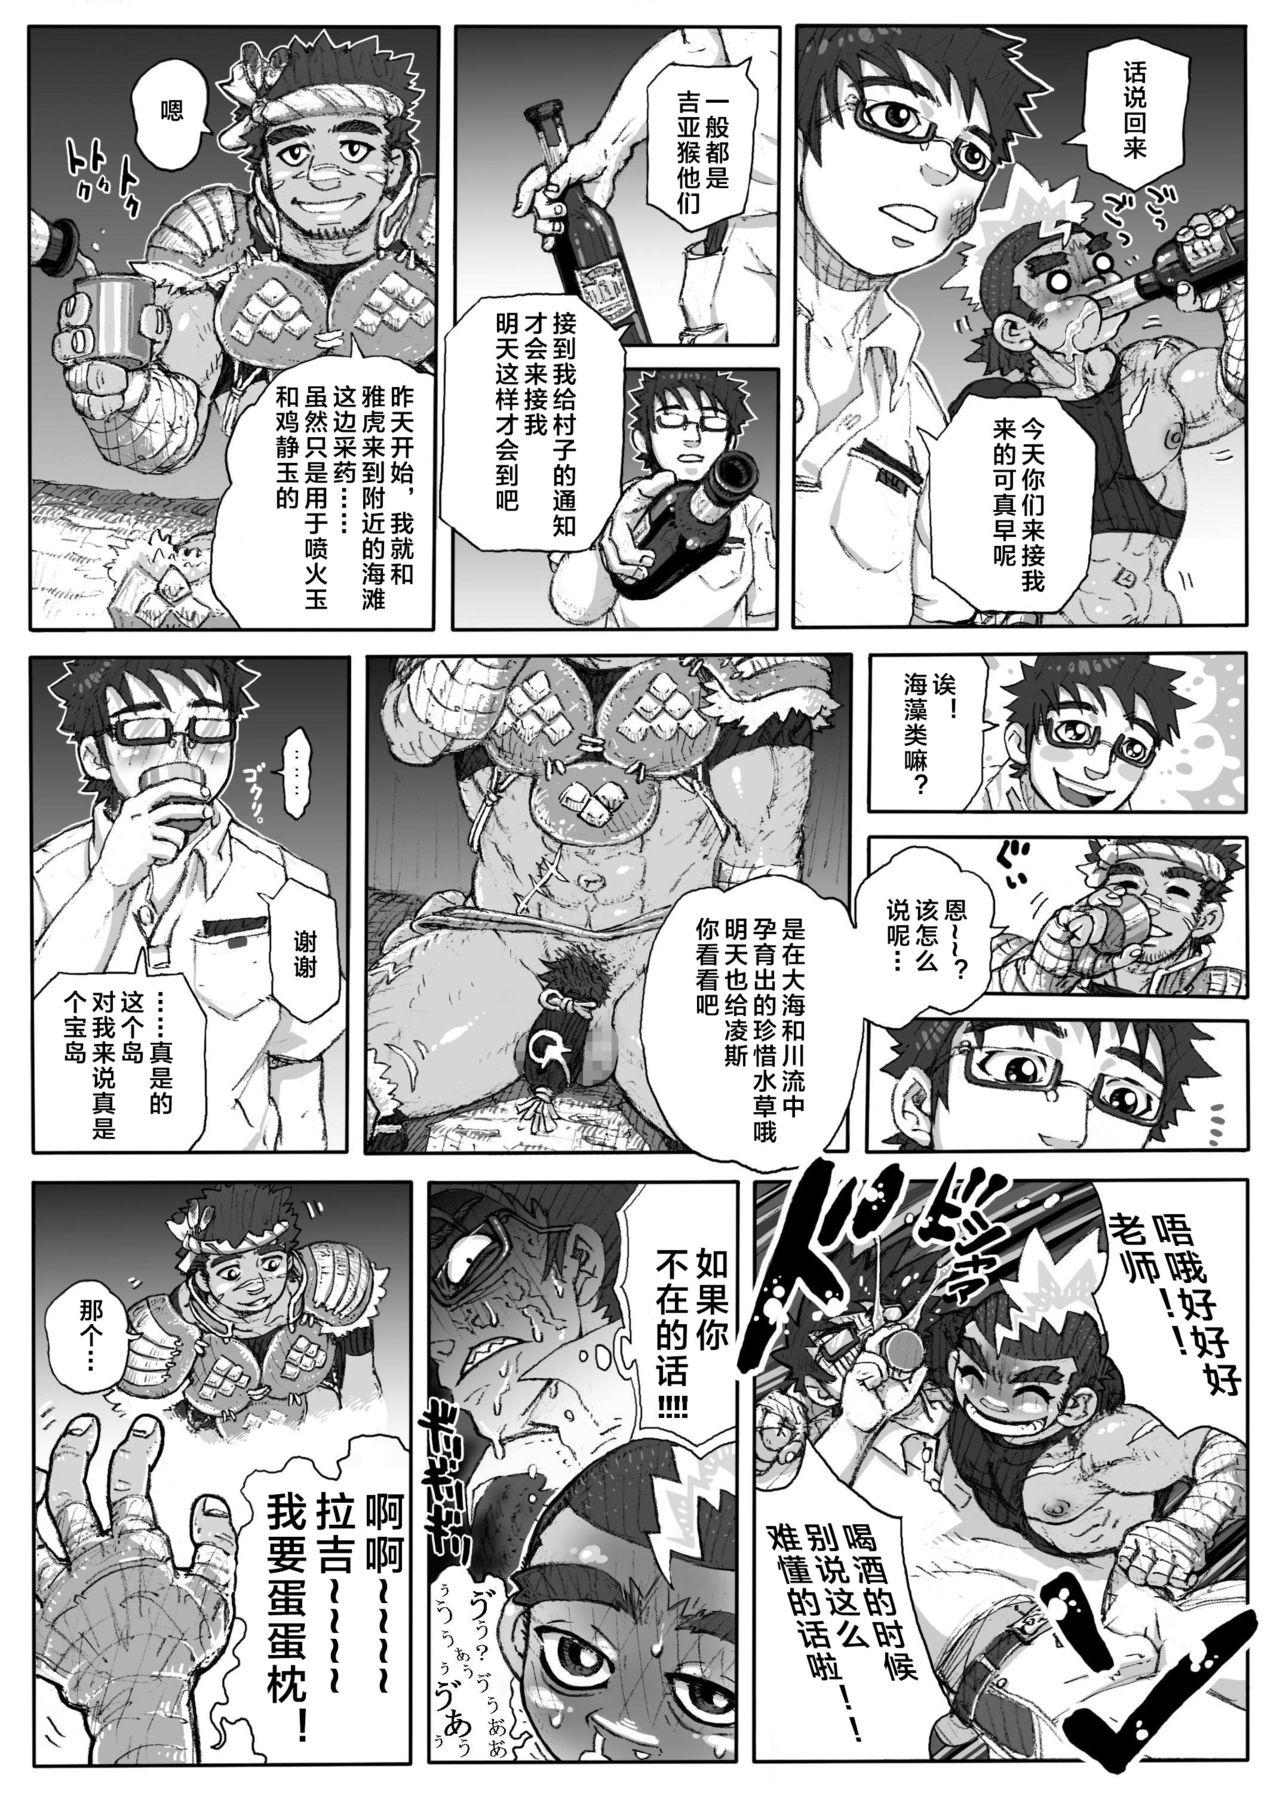 Swinger Hepoe no Kuni kara 1 - Mizu no Gakusha Sensei, Hi no Buzoku no Saru ni Hazukashimerareru no Maki Full Movie - Page 11